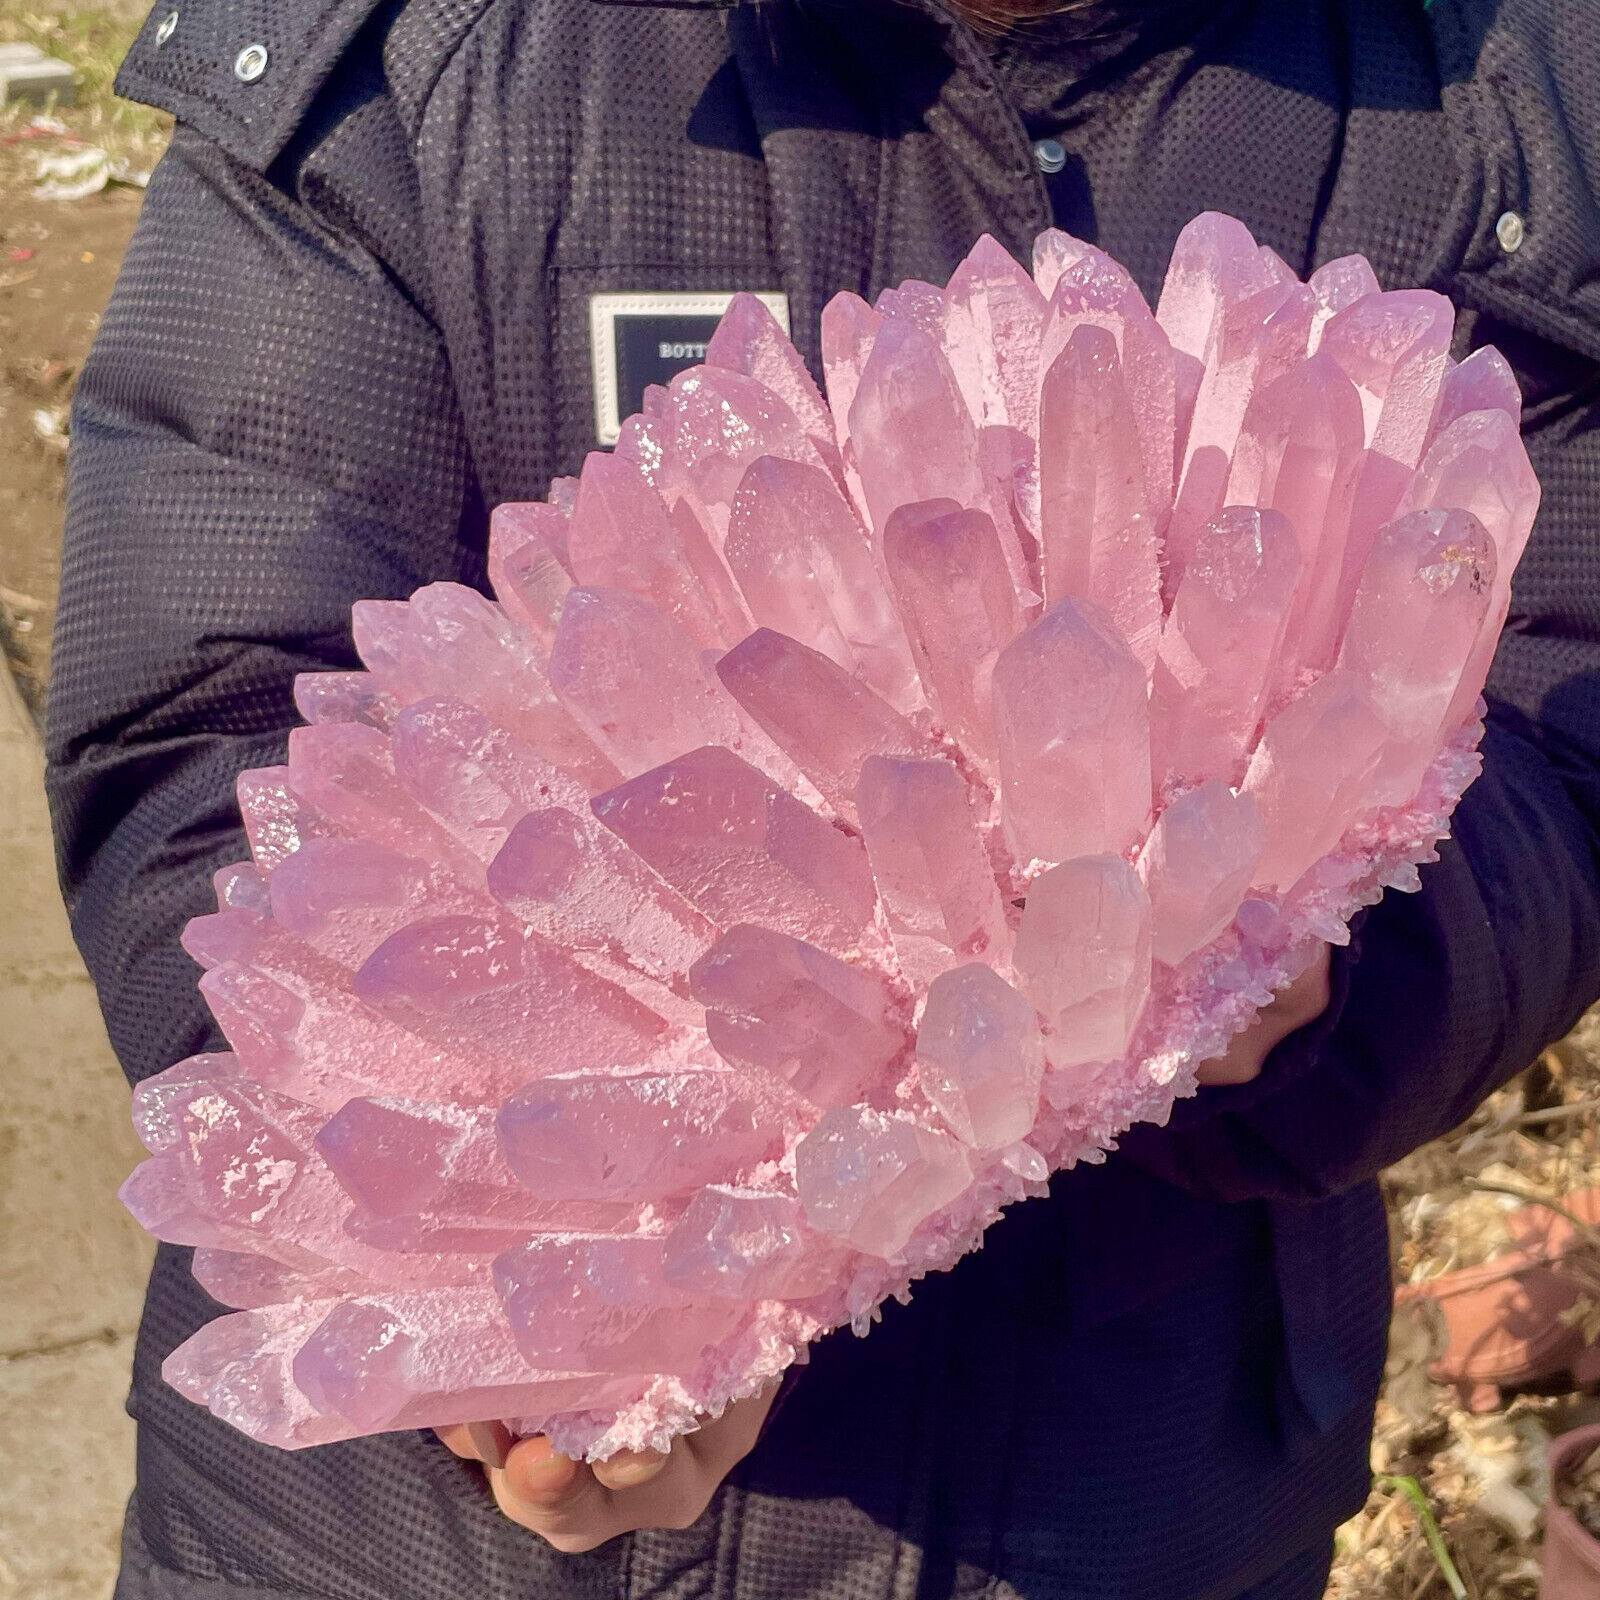 20LB New Find Pink Phantom Quartz Crystal Cluster Mineral Specimen Healing